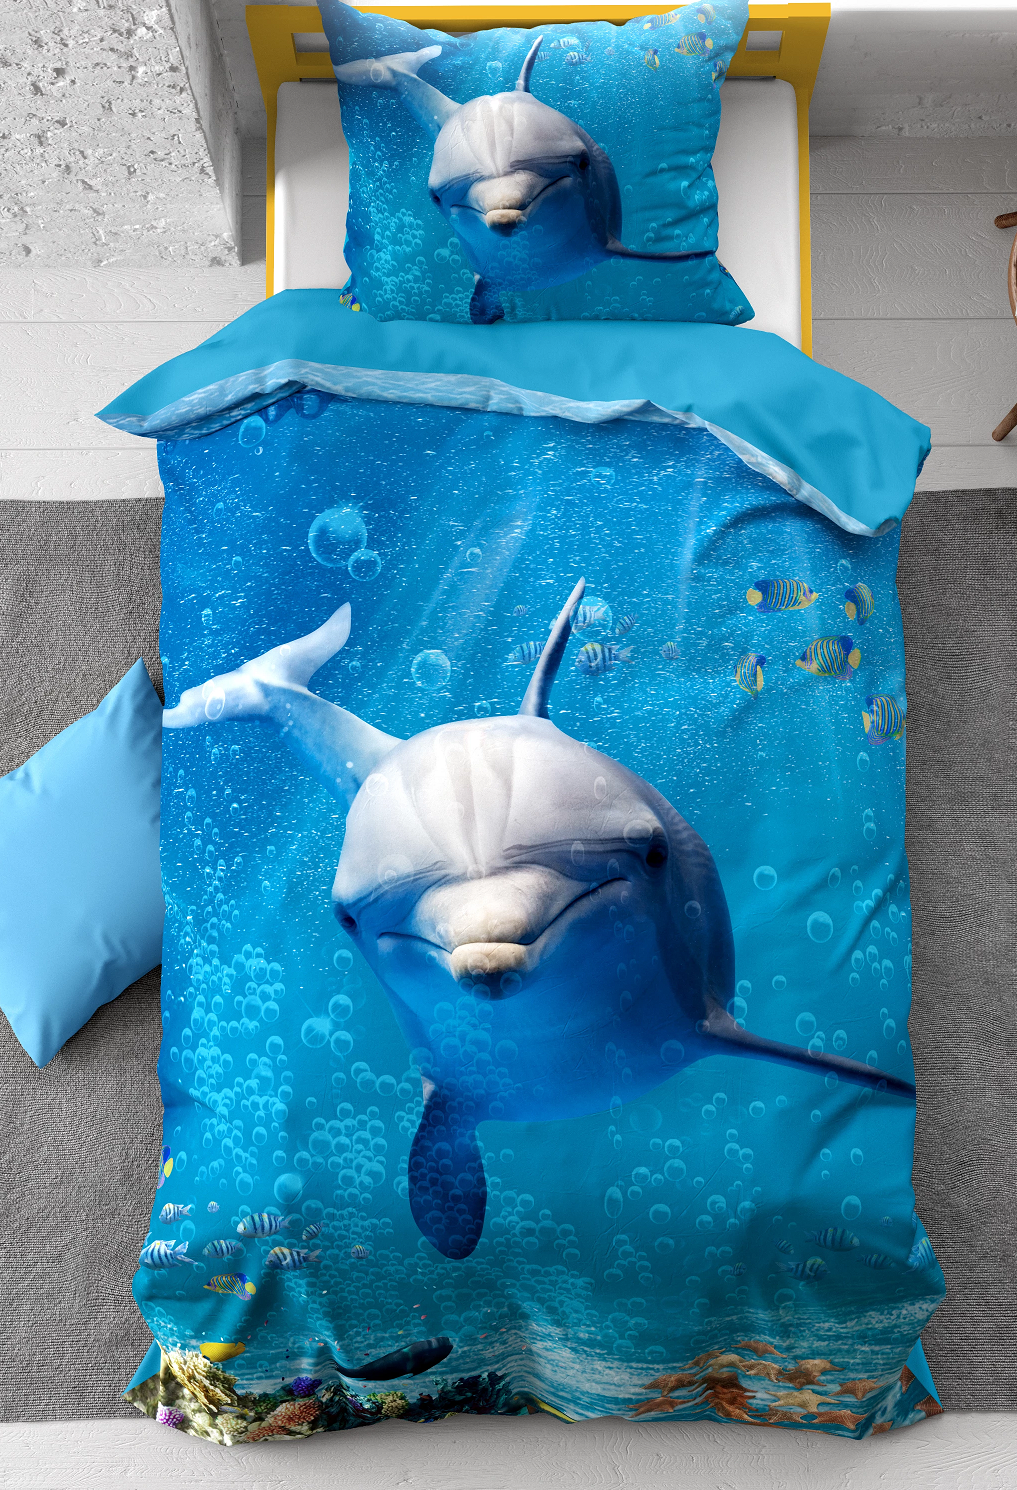 kinder dekbedovertrek hoes) blauw met dolfijn (dolphin), tropische vissen, zeesterren schelpen in de helder blauwe zee (water) KATOEN eenpersoons140 x 220 – Blije Kids